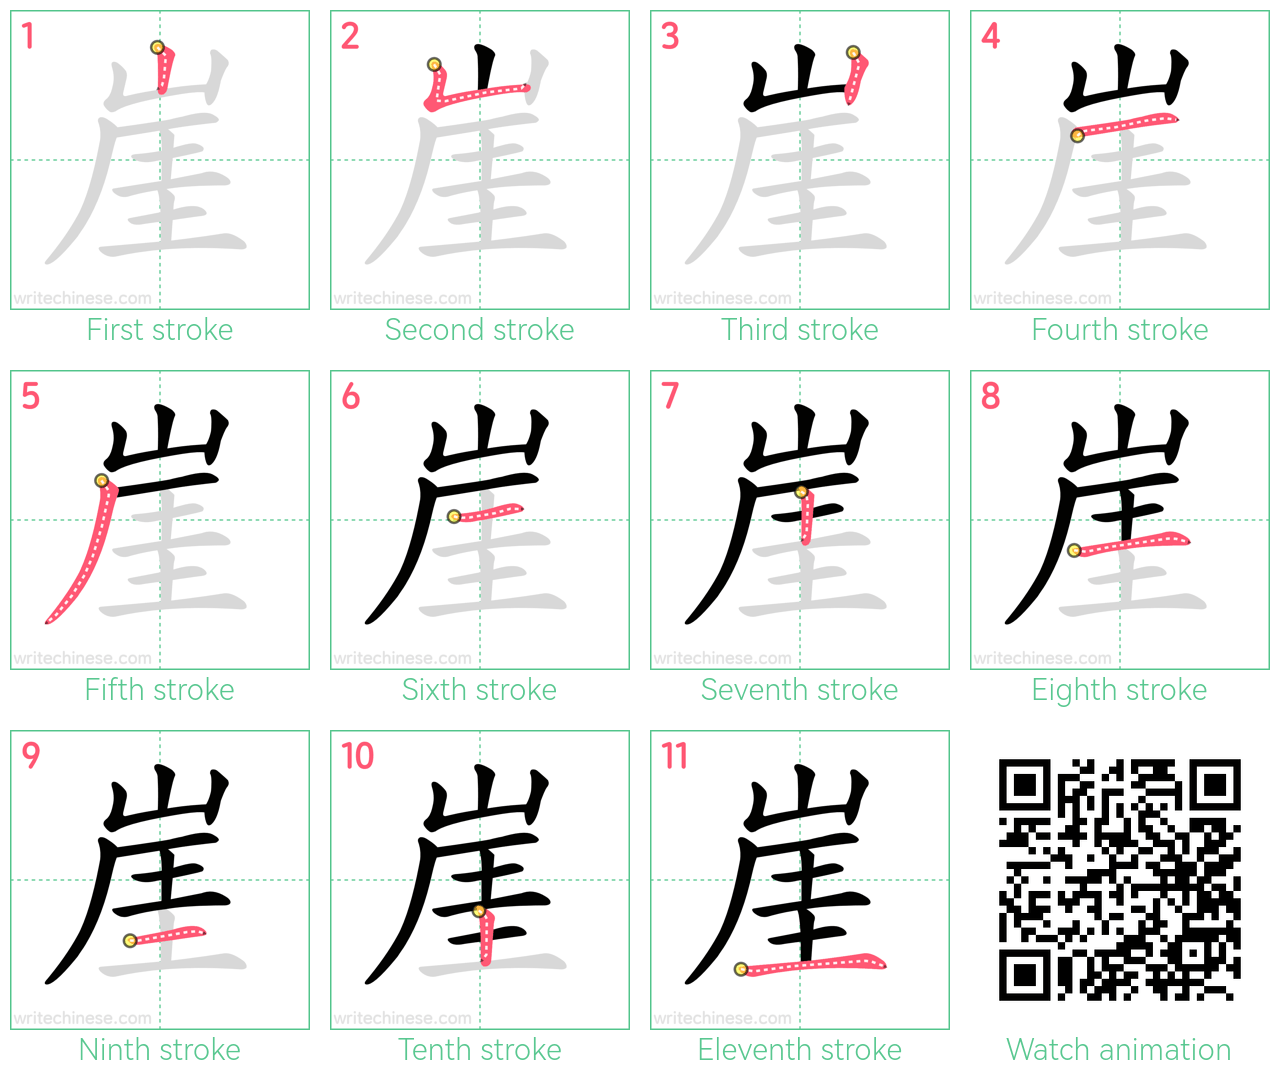 崖 step-by-step stroke order diagrams